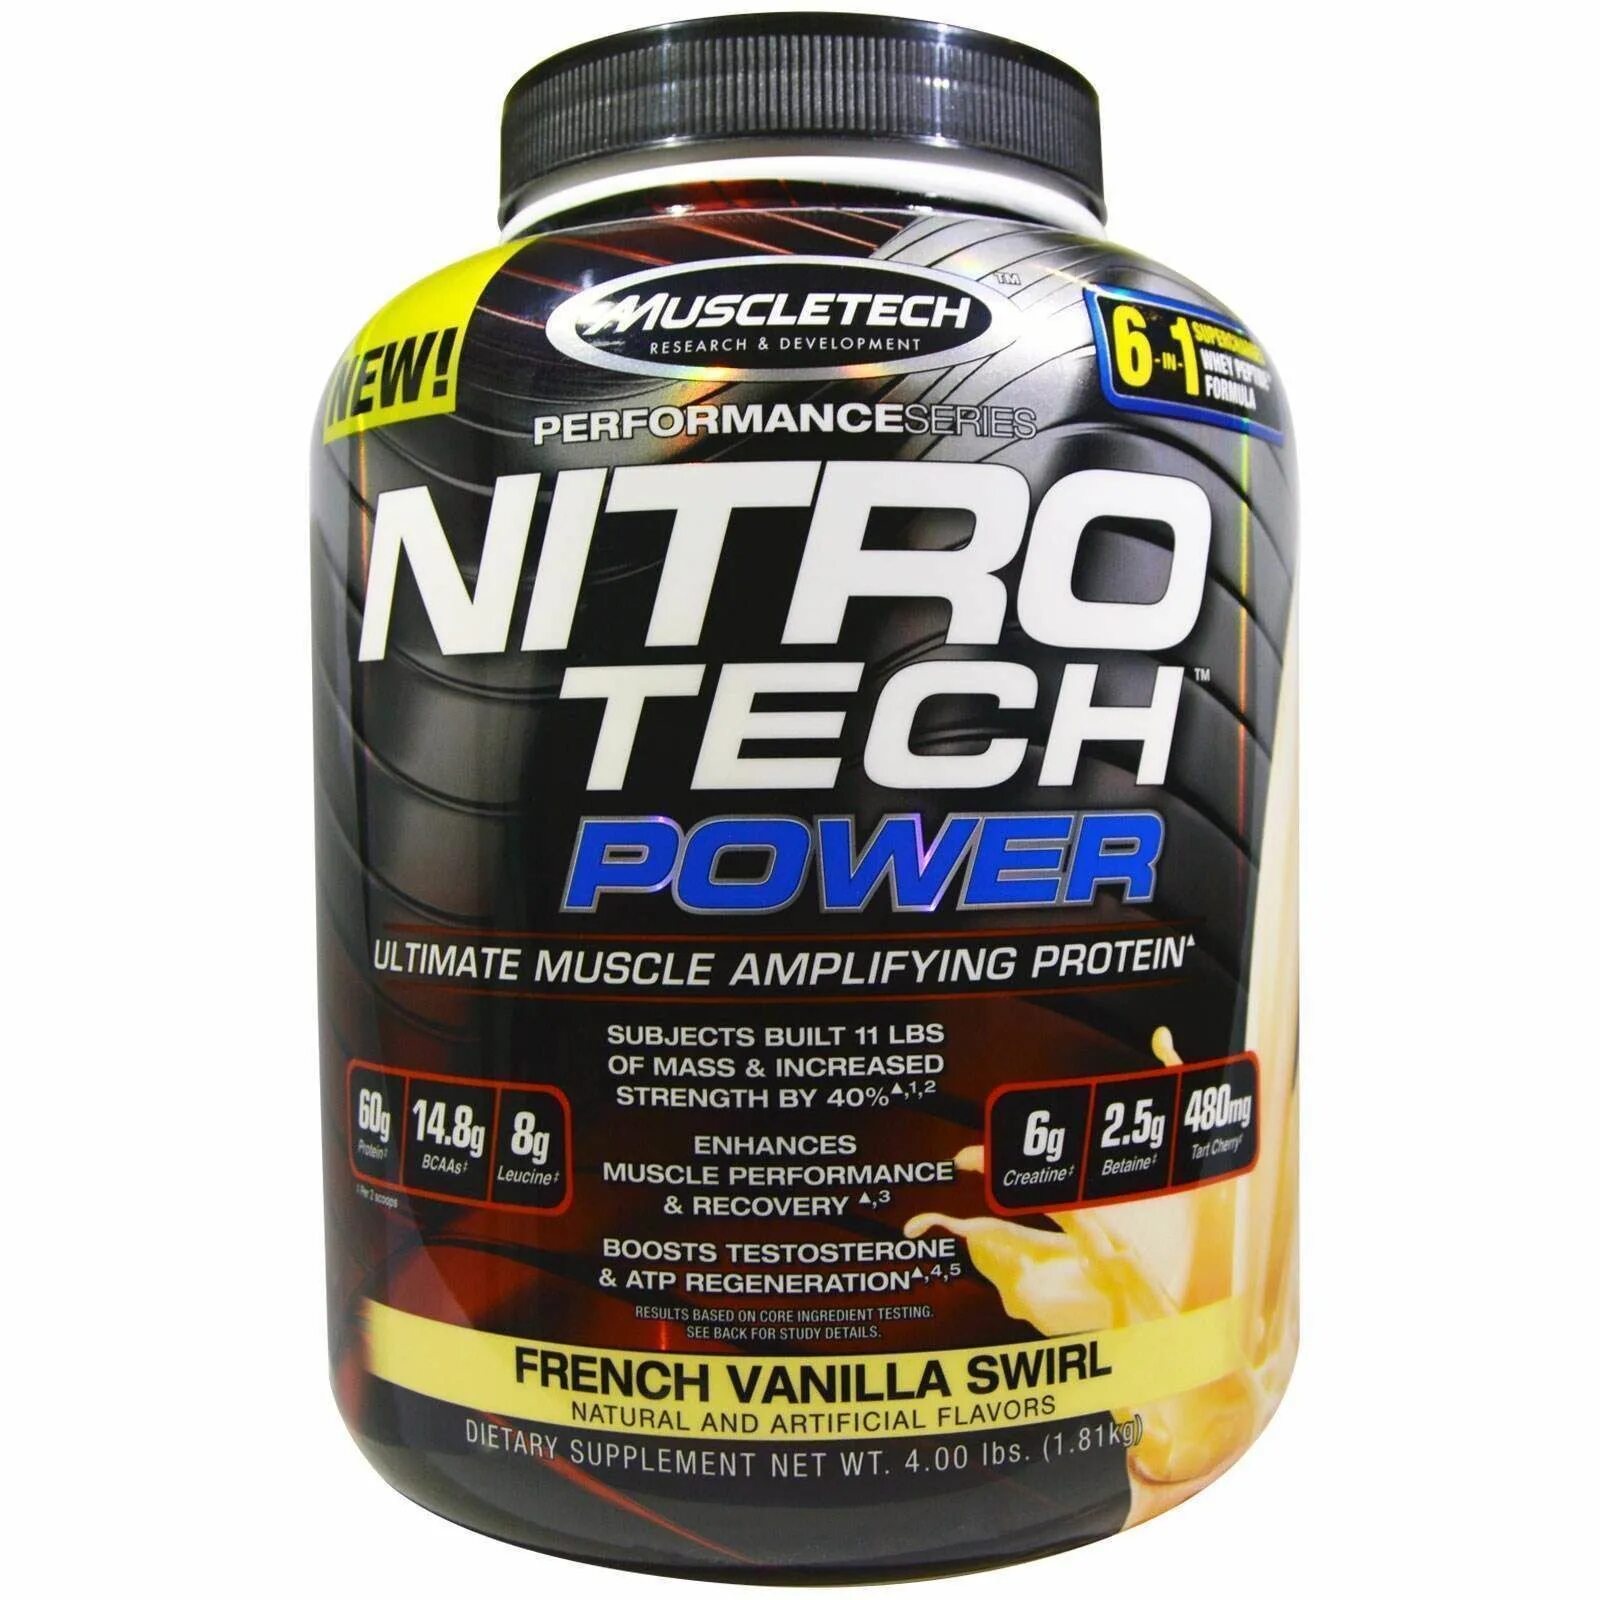 Протеин MUSCLETECH Nitro Tech. MUSCLETECH Nitro Tech Whey 1.81. Nitro Tech протеин ваниль. MUSCLETECH Nitro-Tech Whey Gold Protein 5 lb. Покажи протеин